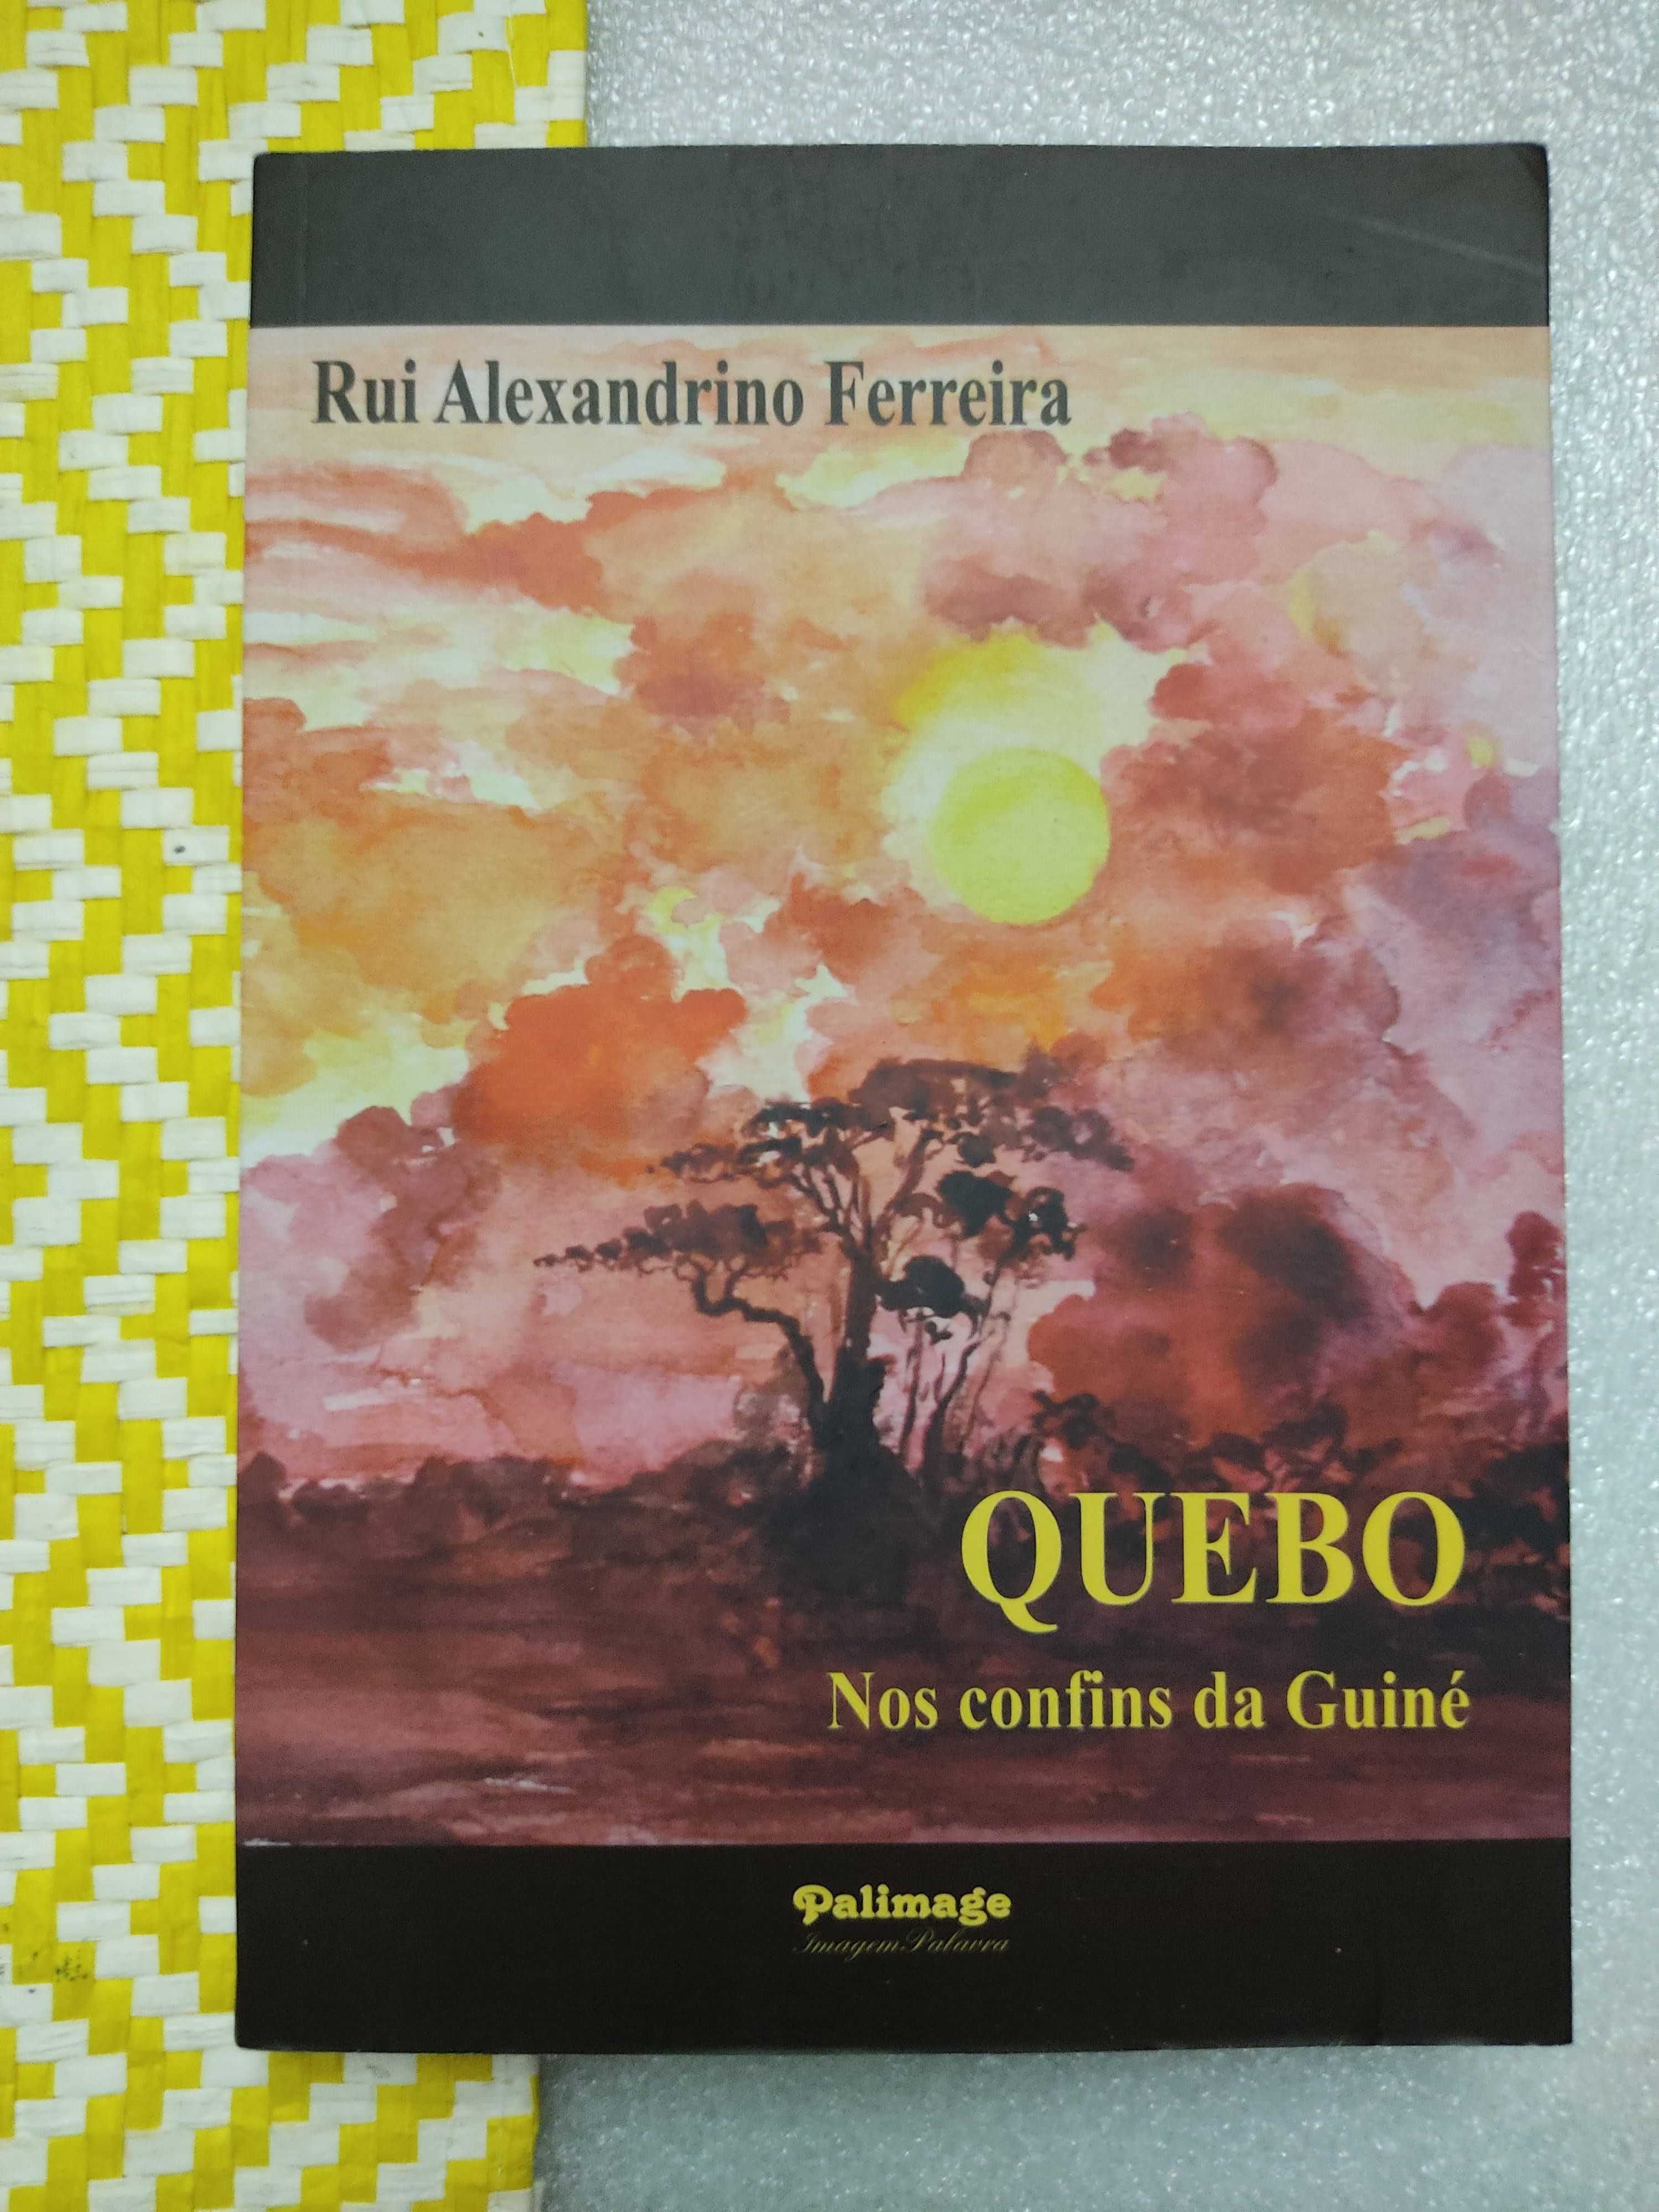 QUEBO - Nos confins da Guiné
de Rui Alexandrino Ferreira